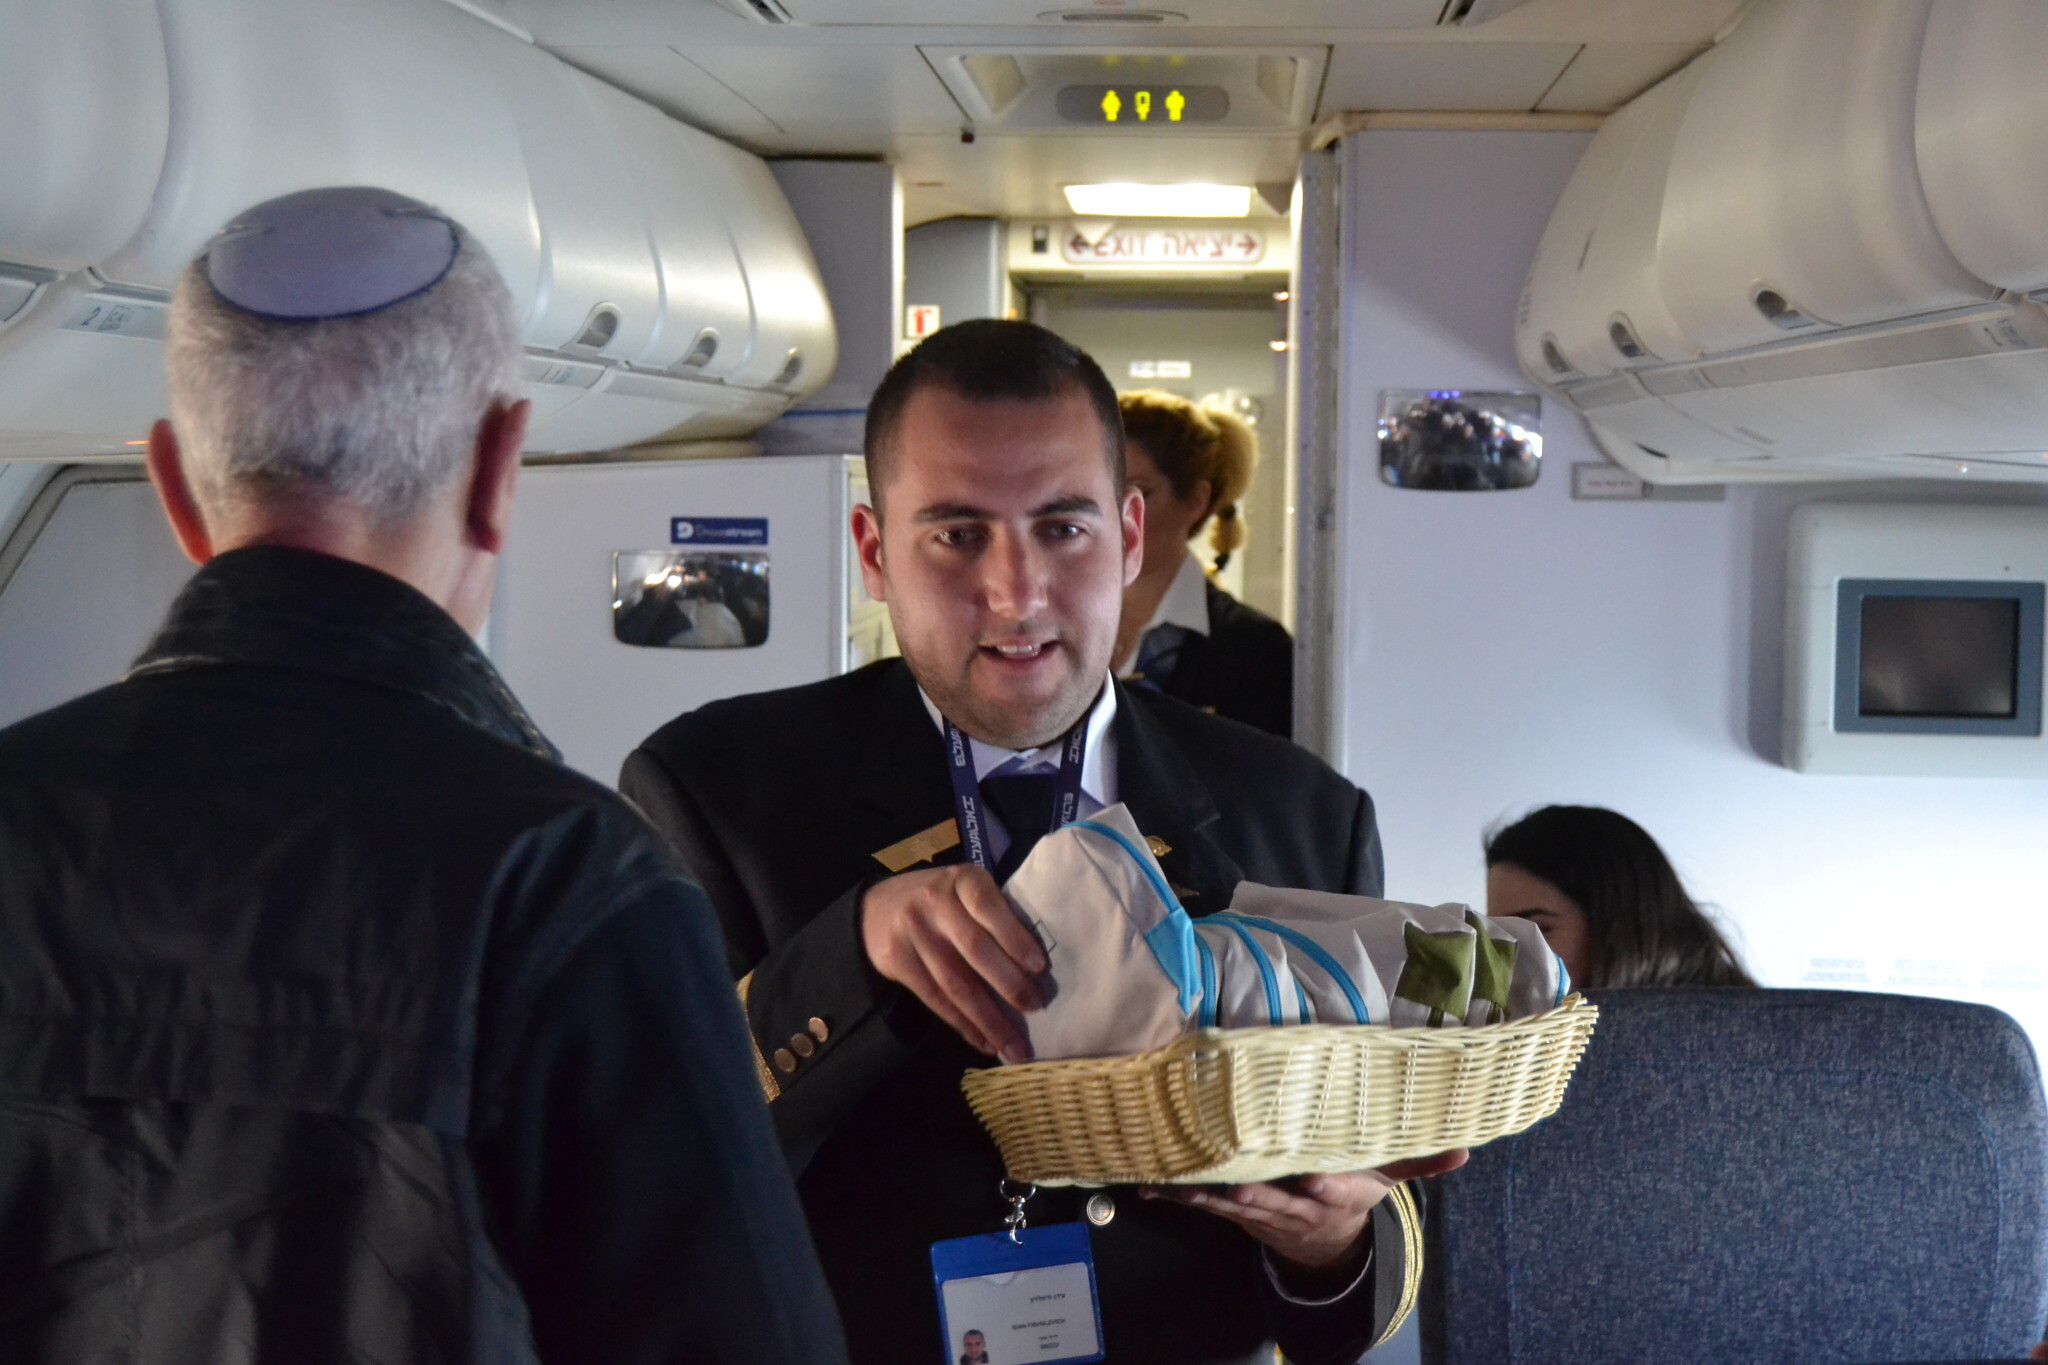  Idan Fishslevich, un jeune homme de 22 ans atteint d'un TSA de haut niveau devenu agent de bord pour une journée, en train de servir les passagers à bord du vol LY383 de Tel Aviv Rome, le 20 février 2023. (Crédit : Tobias Siegal/The Times of Israel)